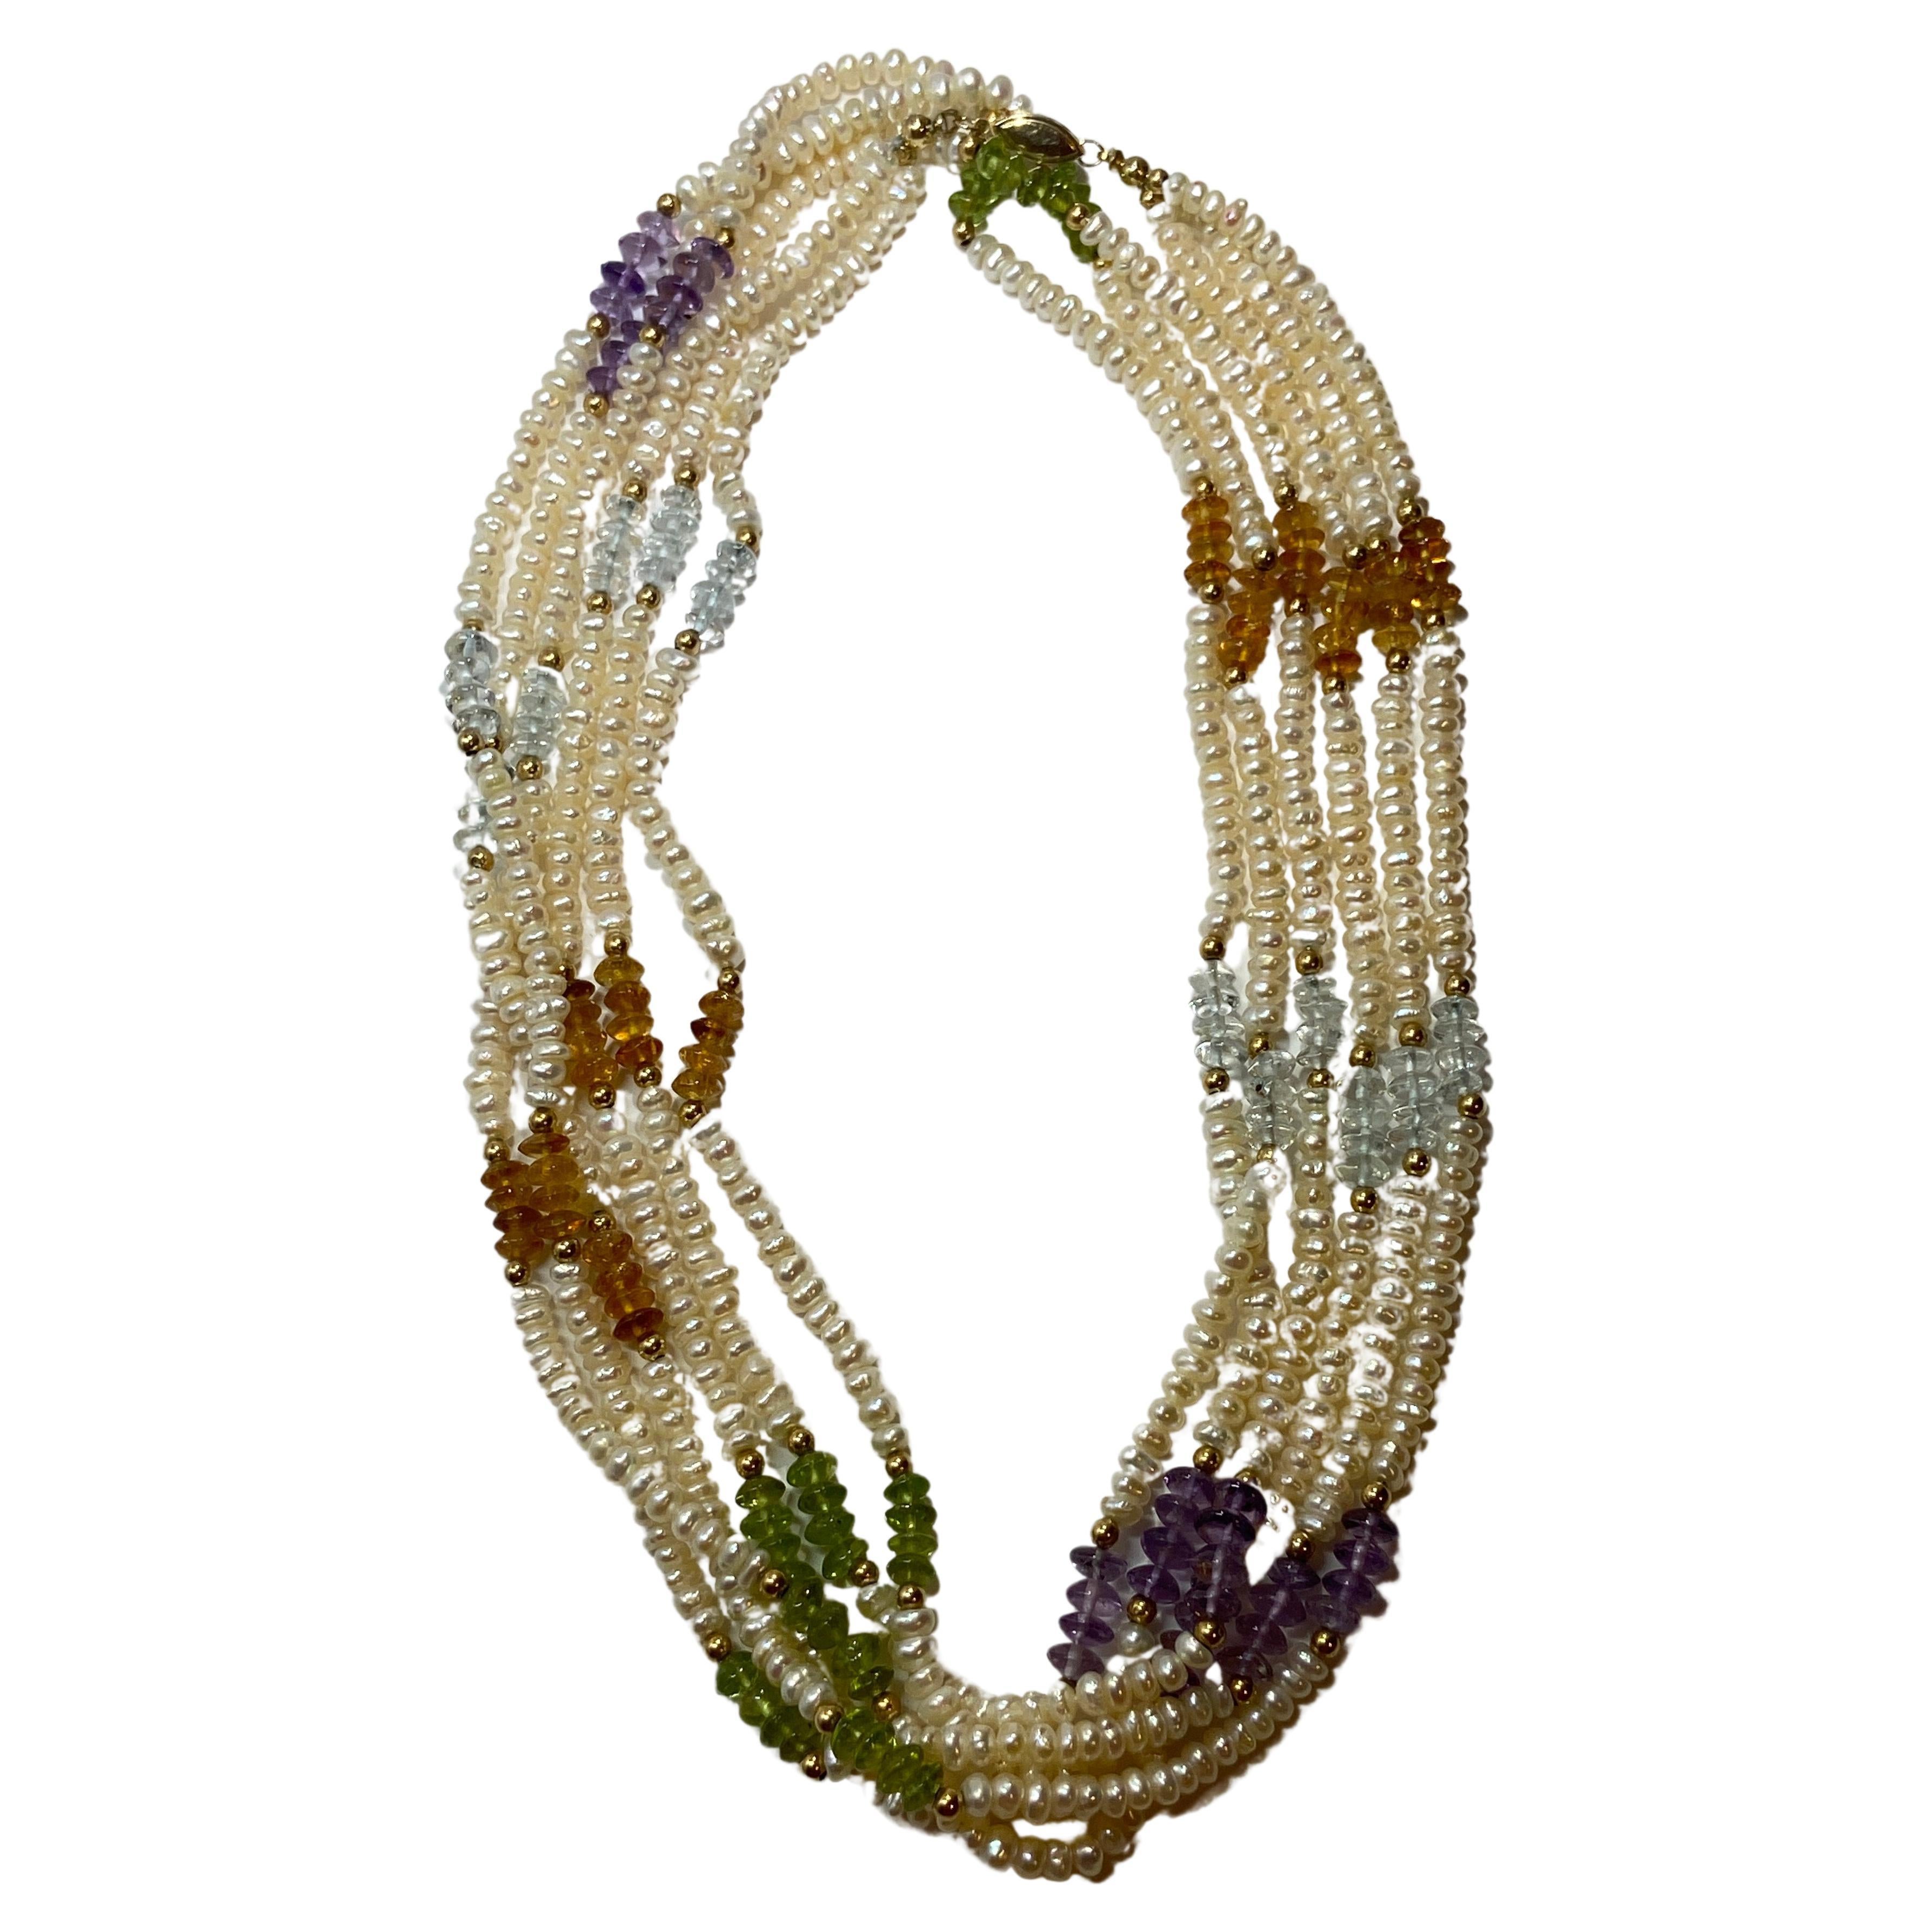 Dreireihige Perlen-Halskette mit Halbedelsteinen und Goldbeschlägen